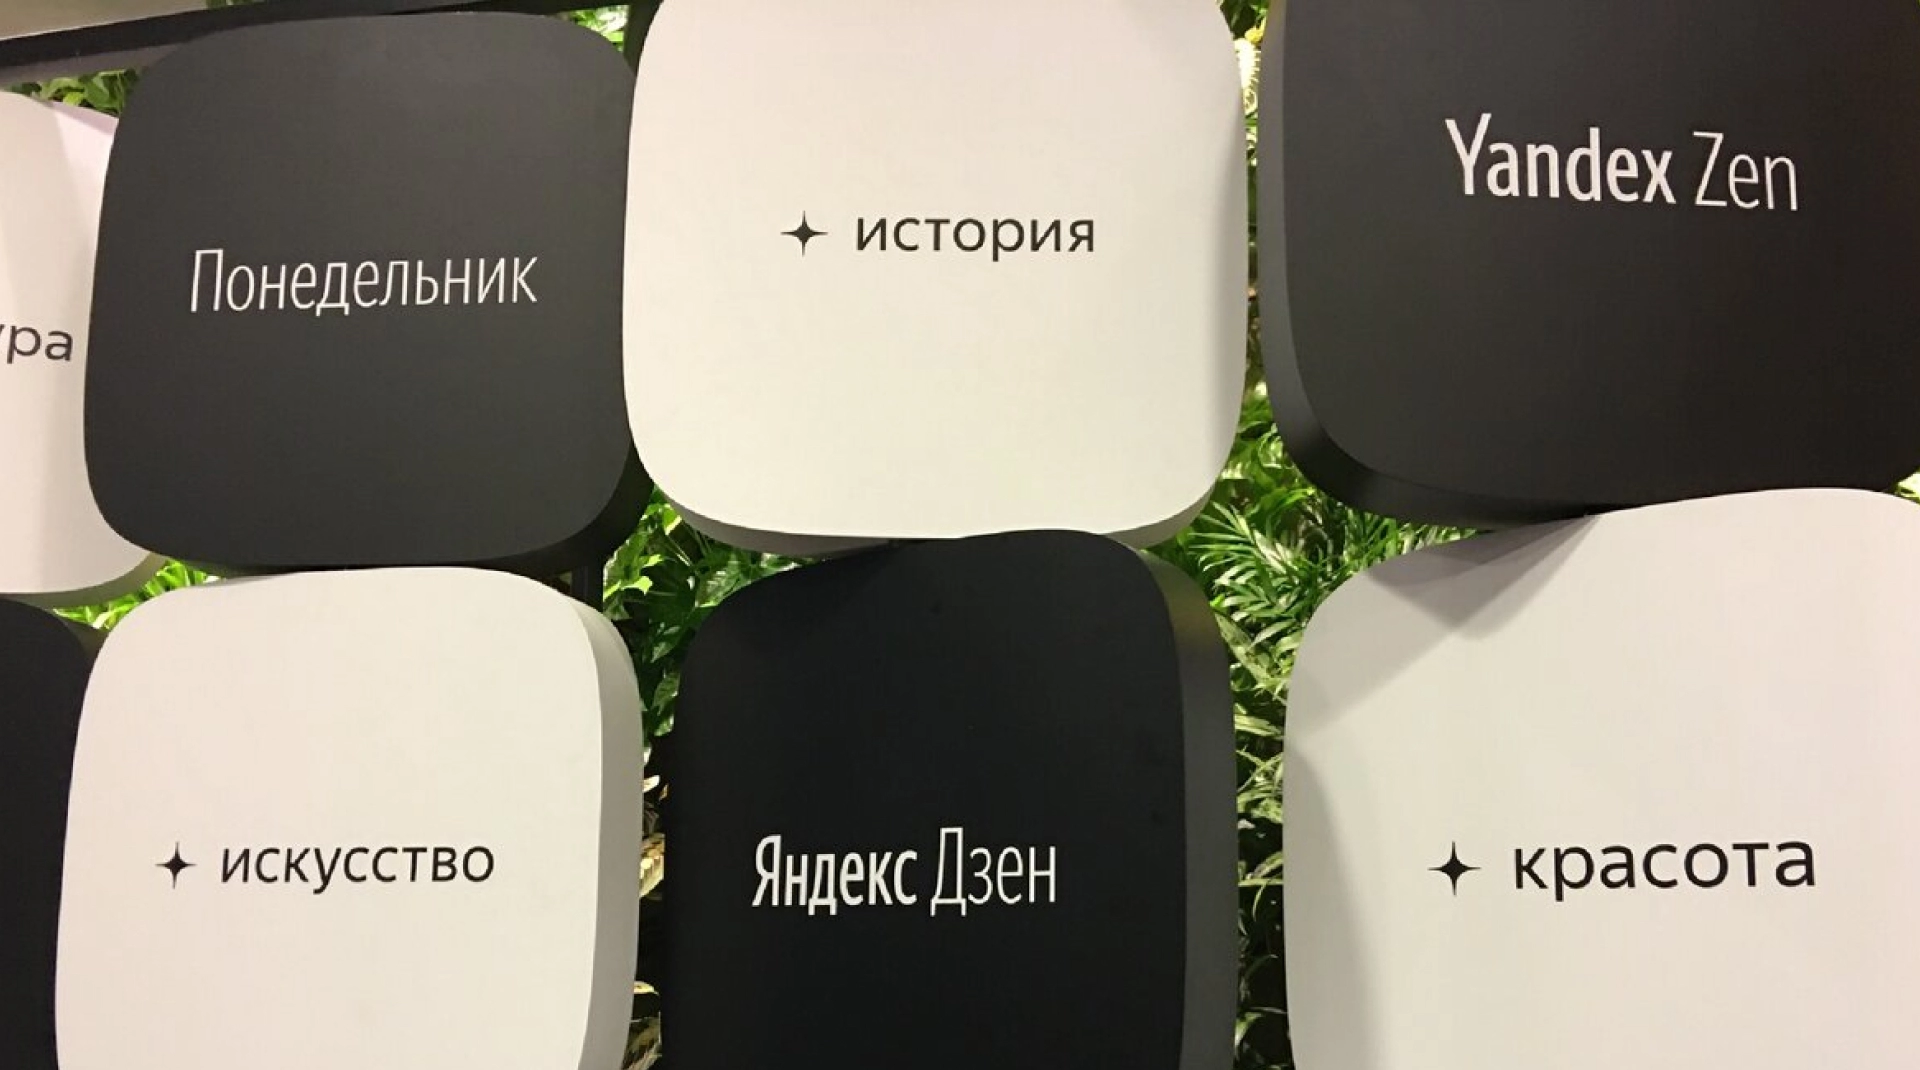 Много видео, больше подписчиков, посты на 24 часа, развенчание легенд... – обновления в работе «Яндекс.Дзен»